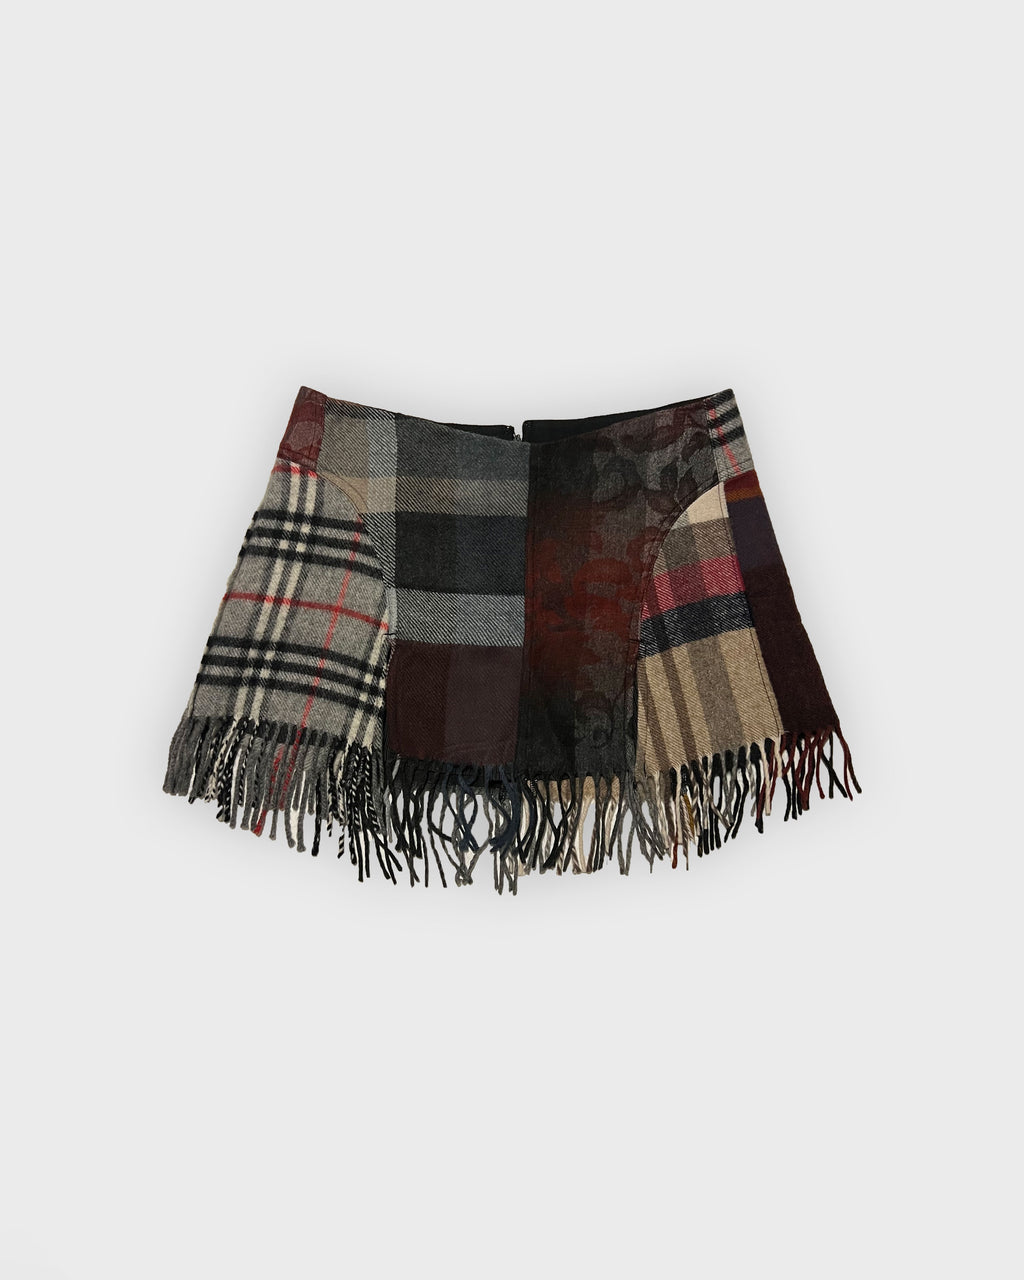 March Plaidness: Plaid Blanket Scarf + Tartan Mini Skirt